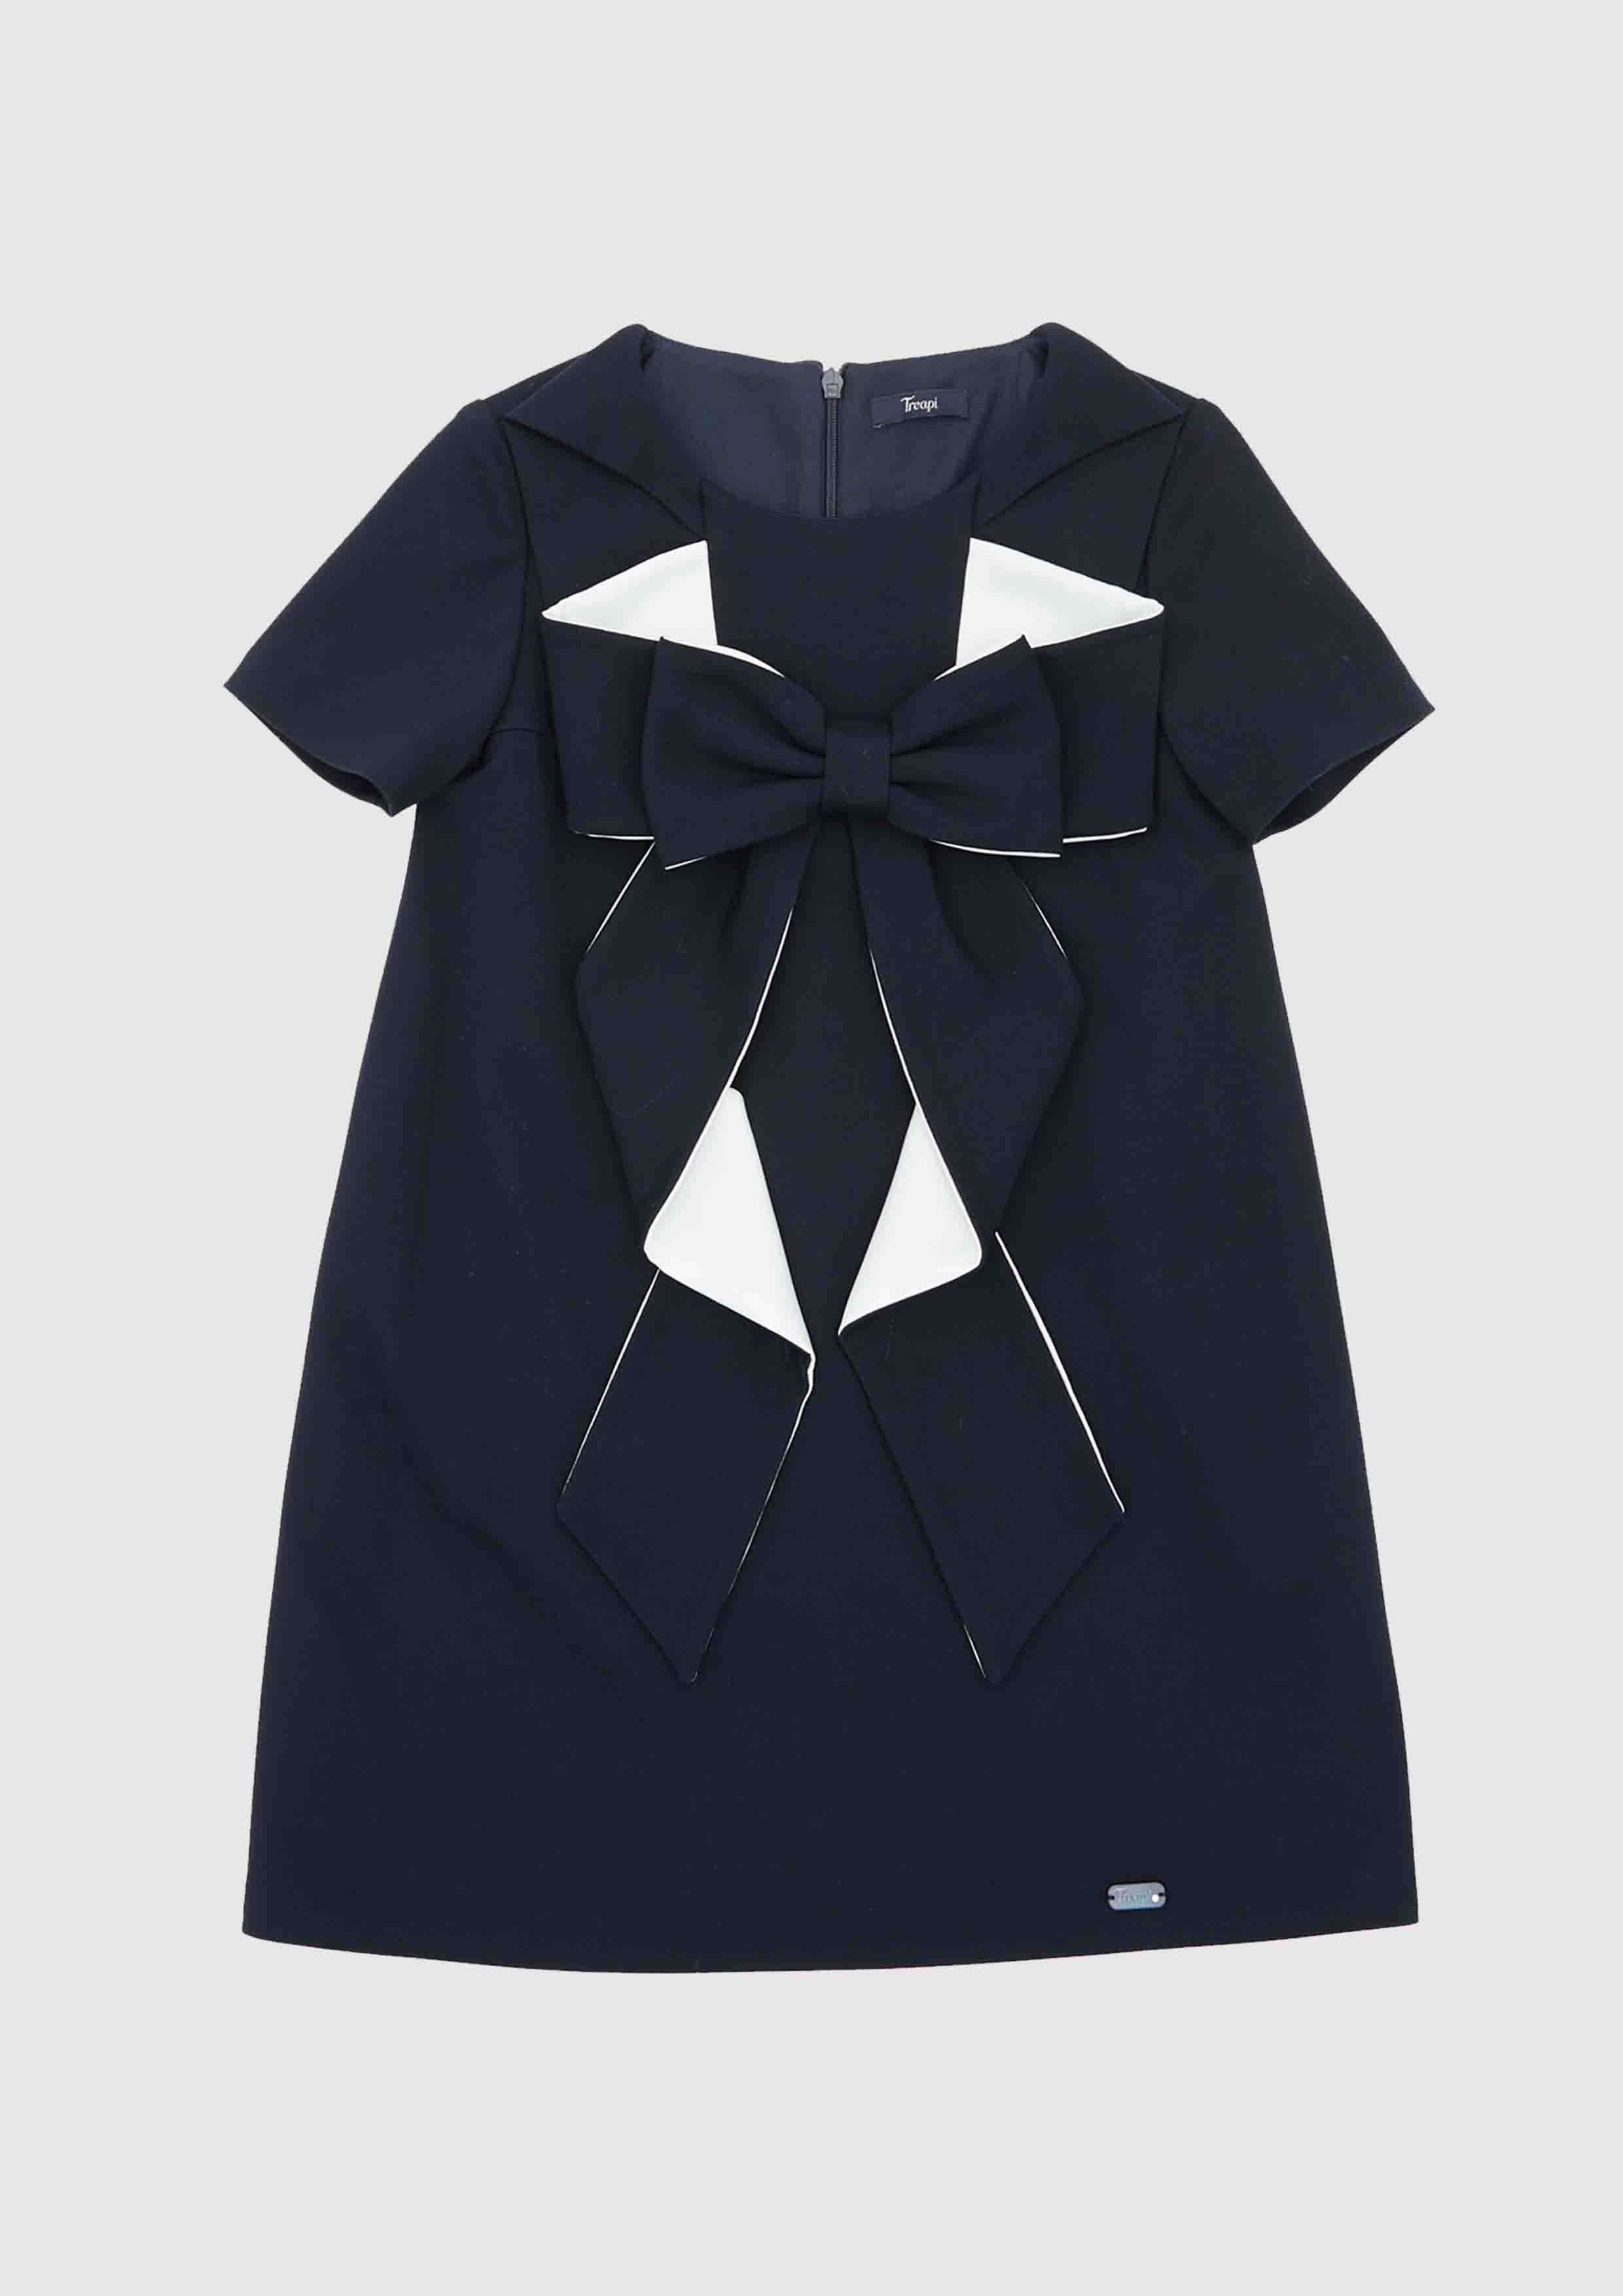 Treapi Bow Dress – Tiny Models